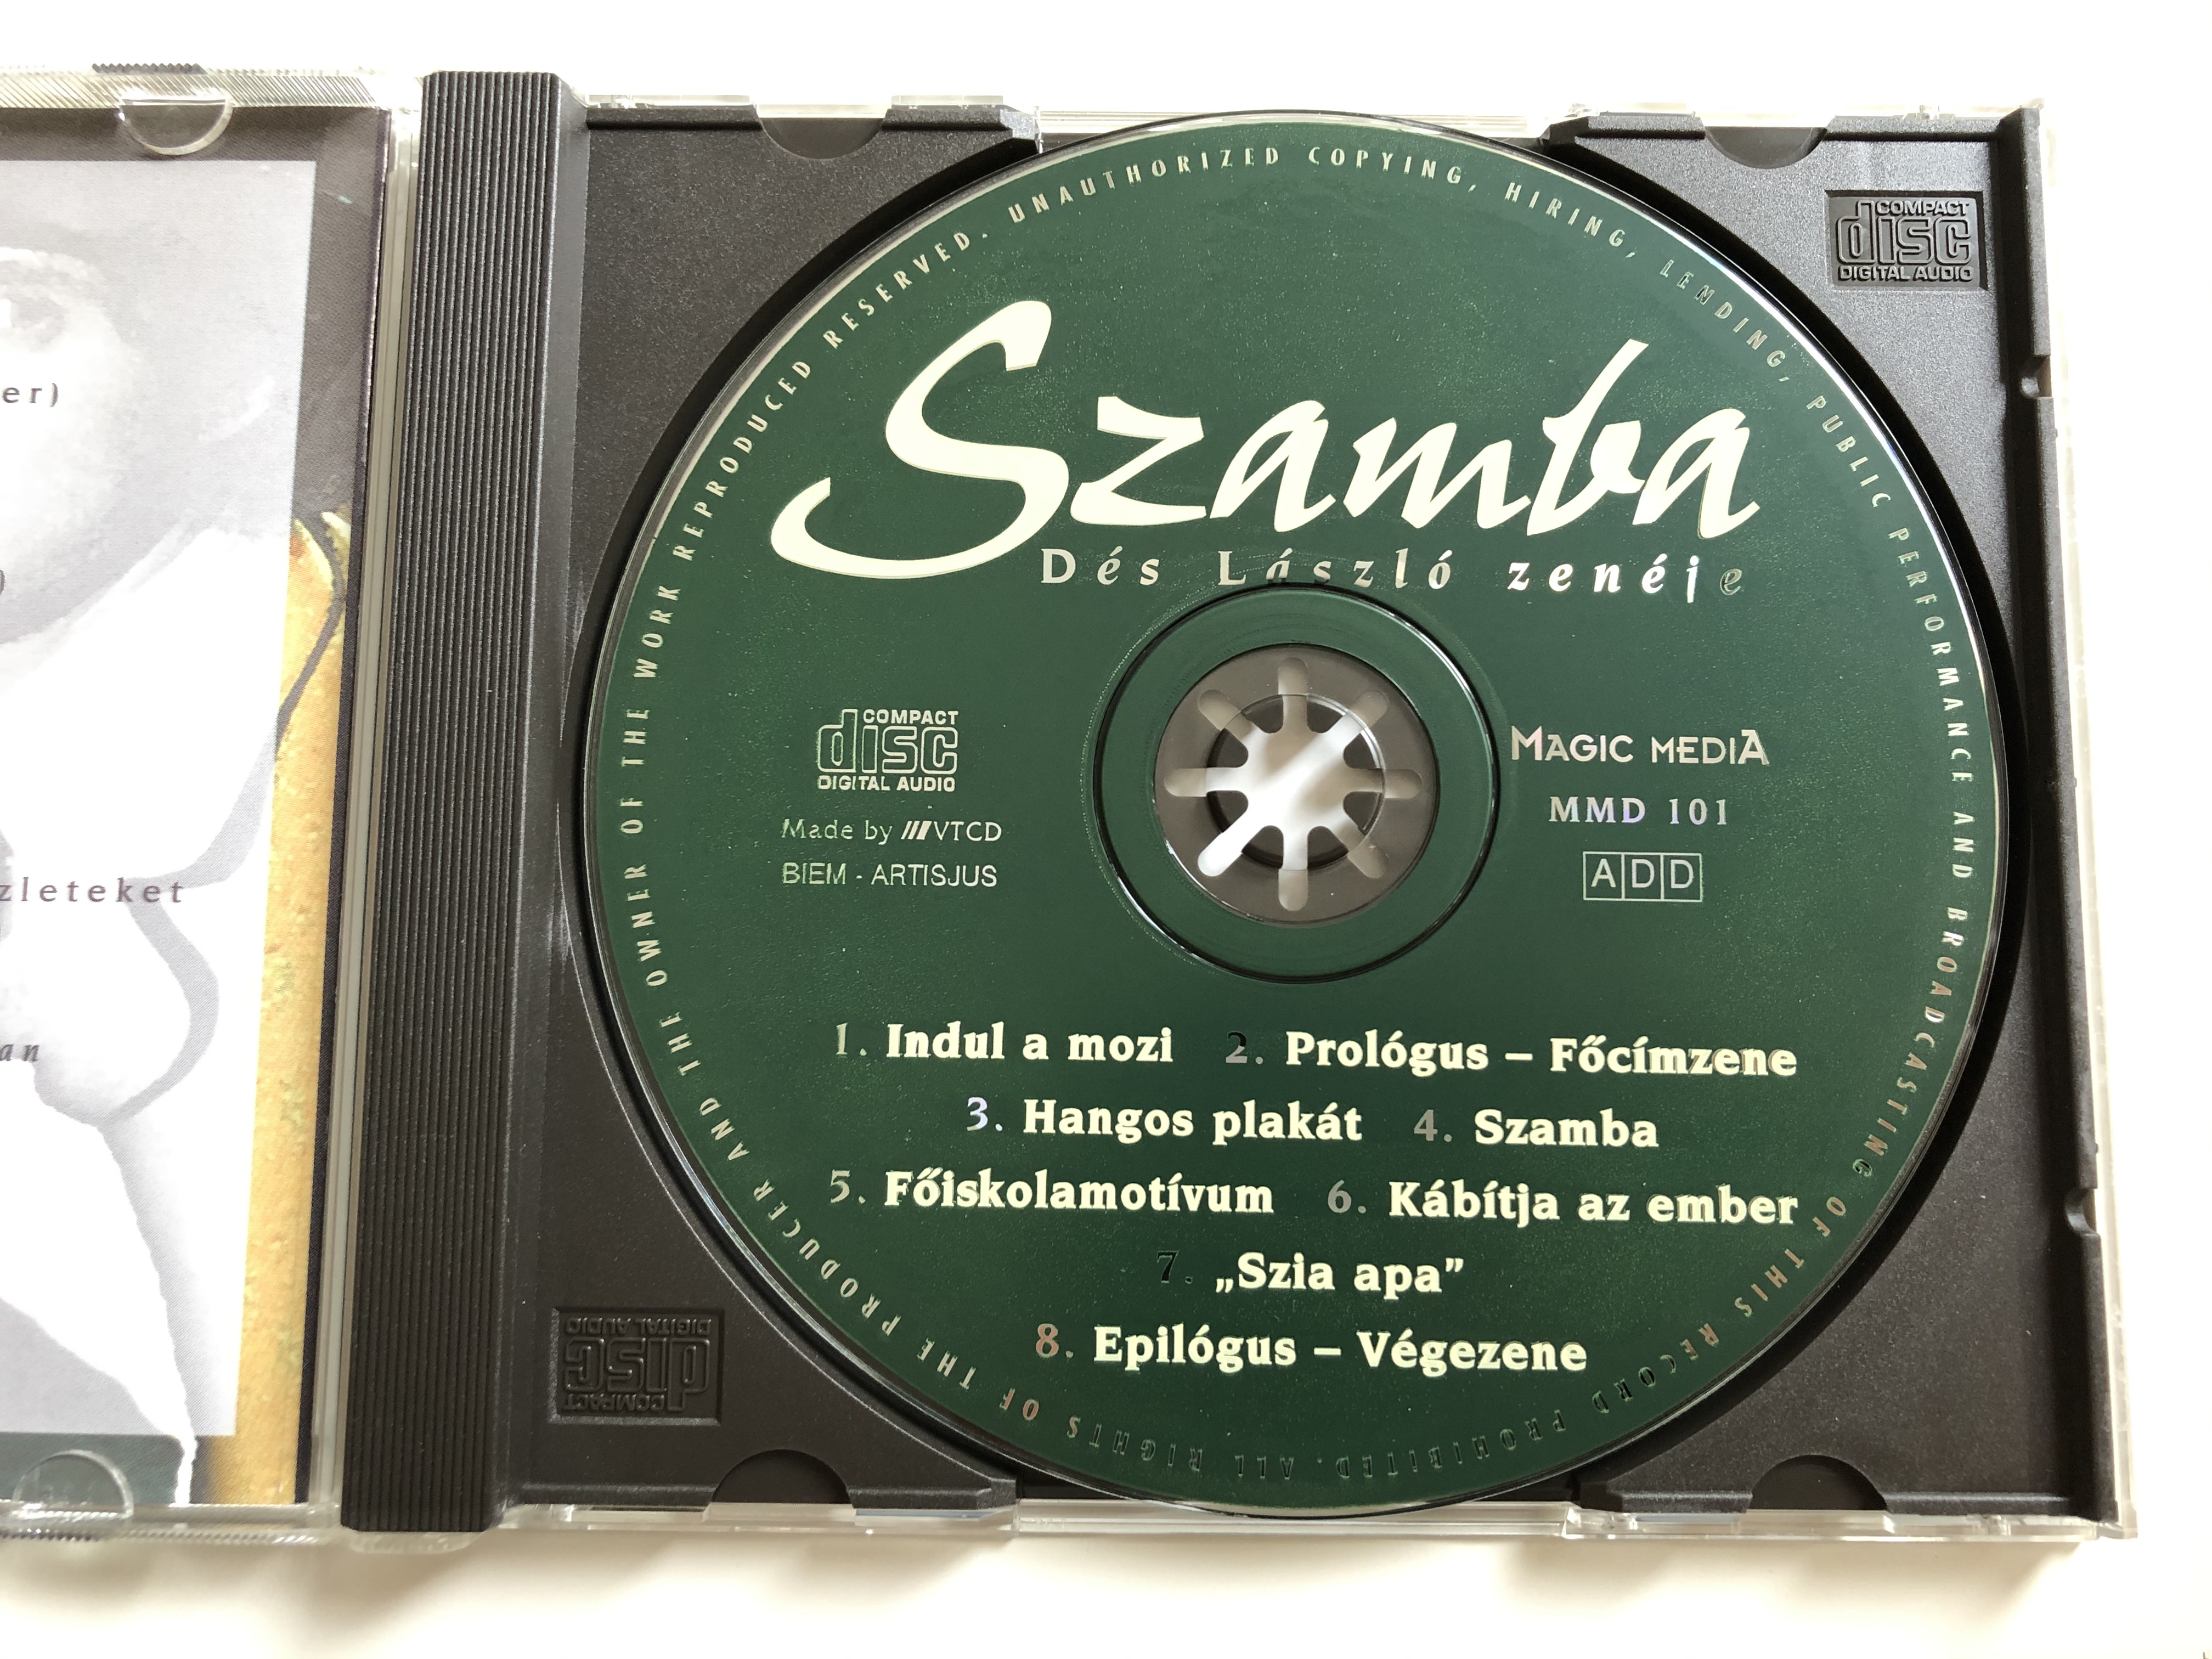 d-s-l-szl-szamba-koltai-robert-filmie-magic-media-audio-cd-1996-mmd-101-6-.jpg